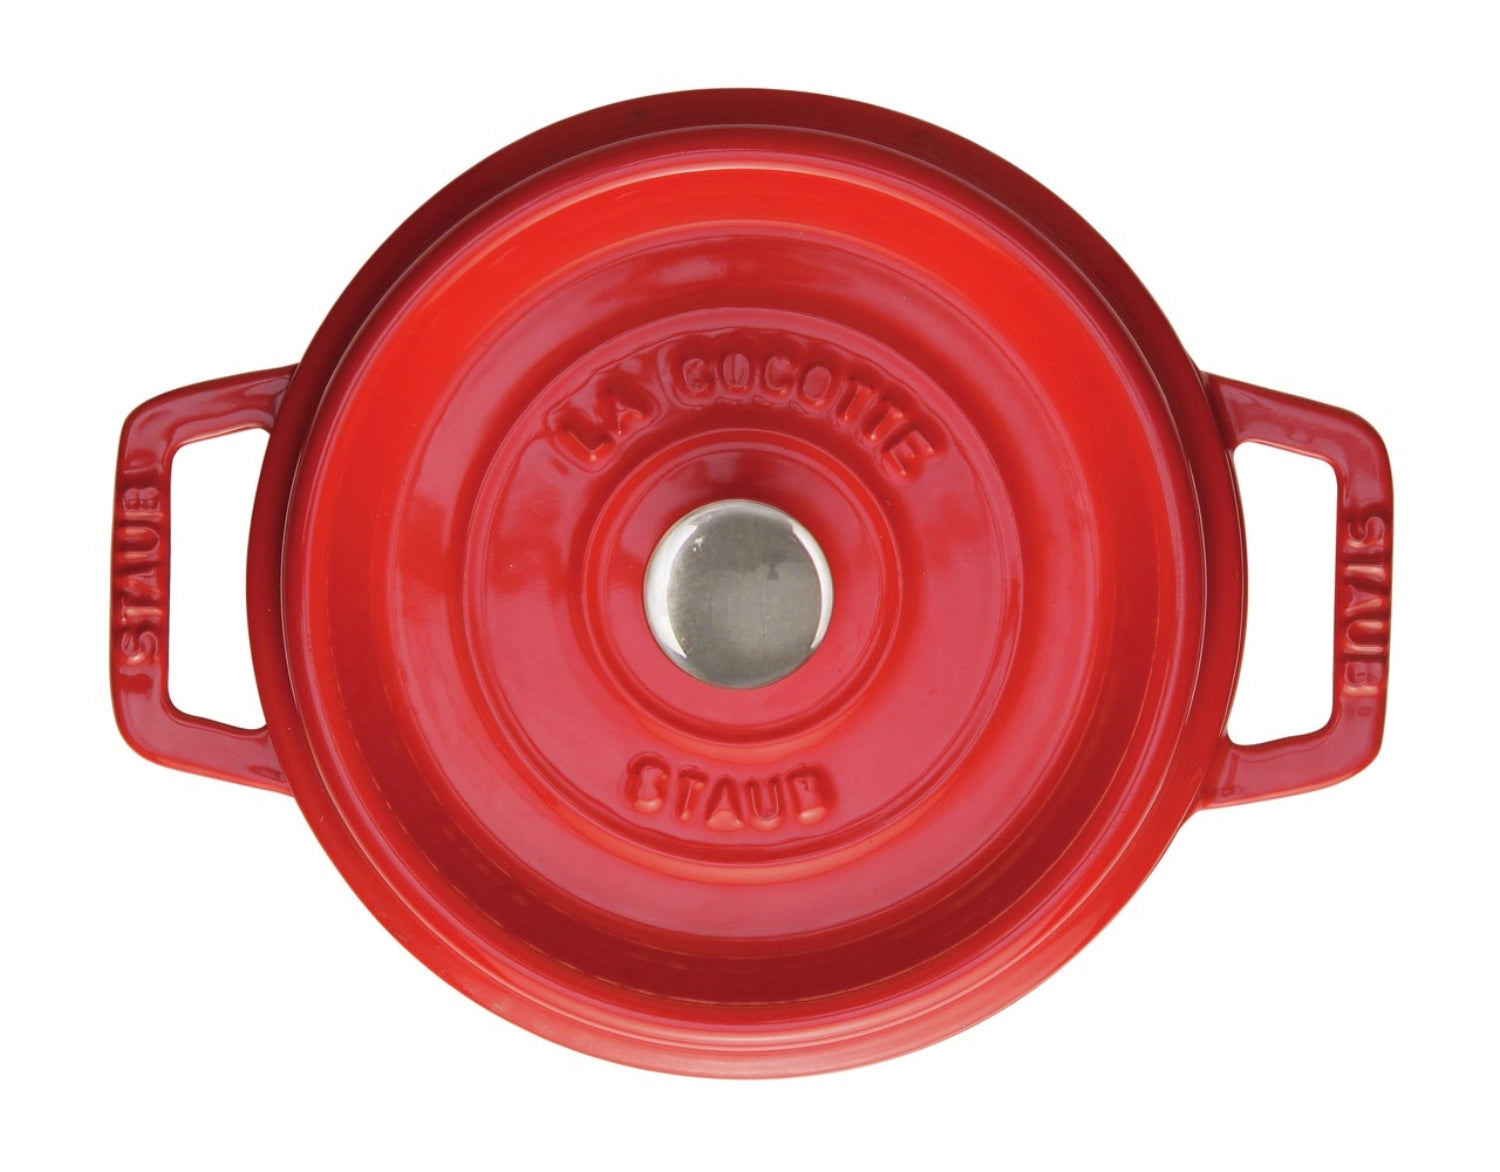 Cocotte 20 cm, rund, Kirsch-Rot, Gusseisen 2.2l - KAQTU Design